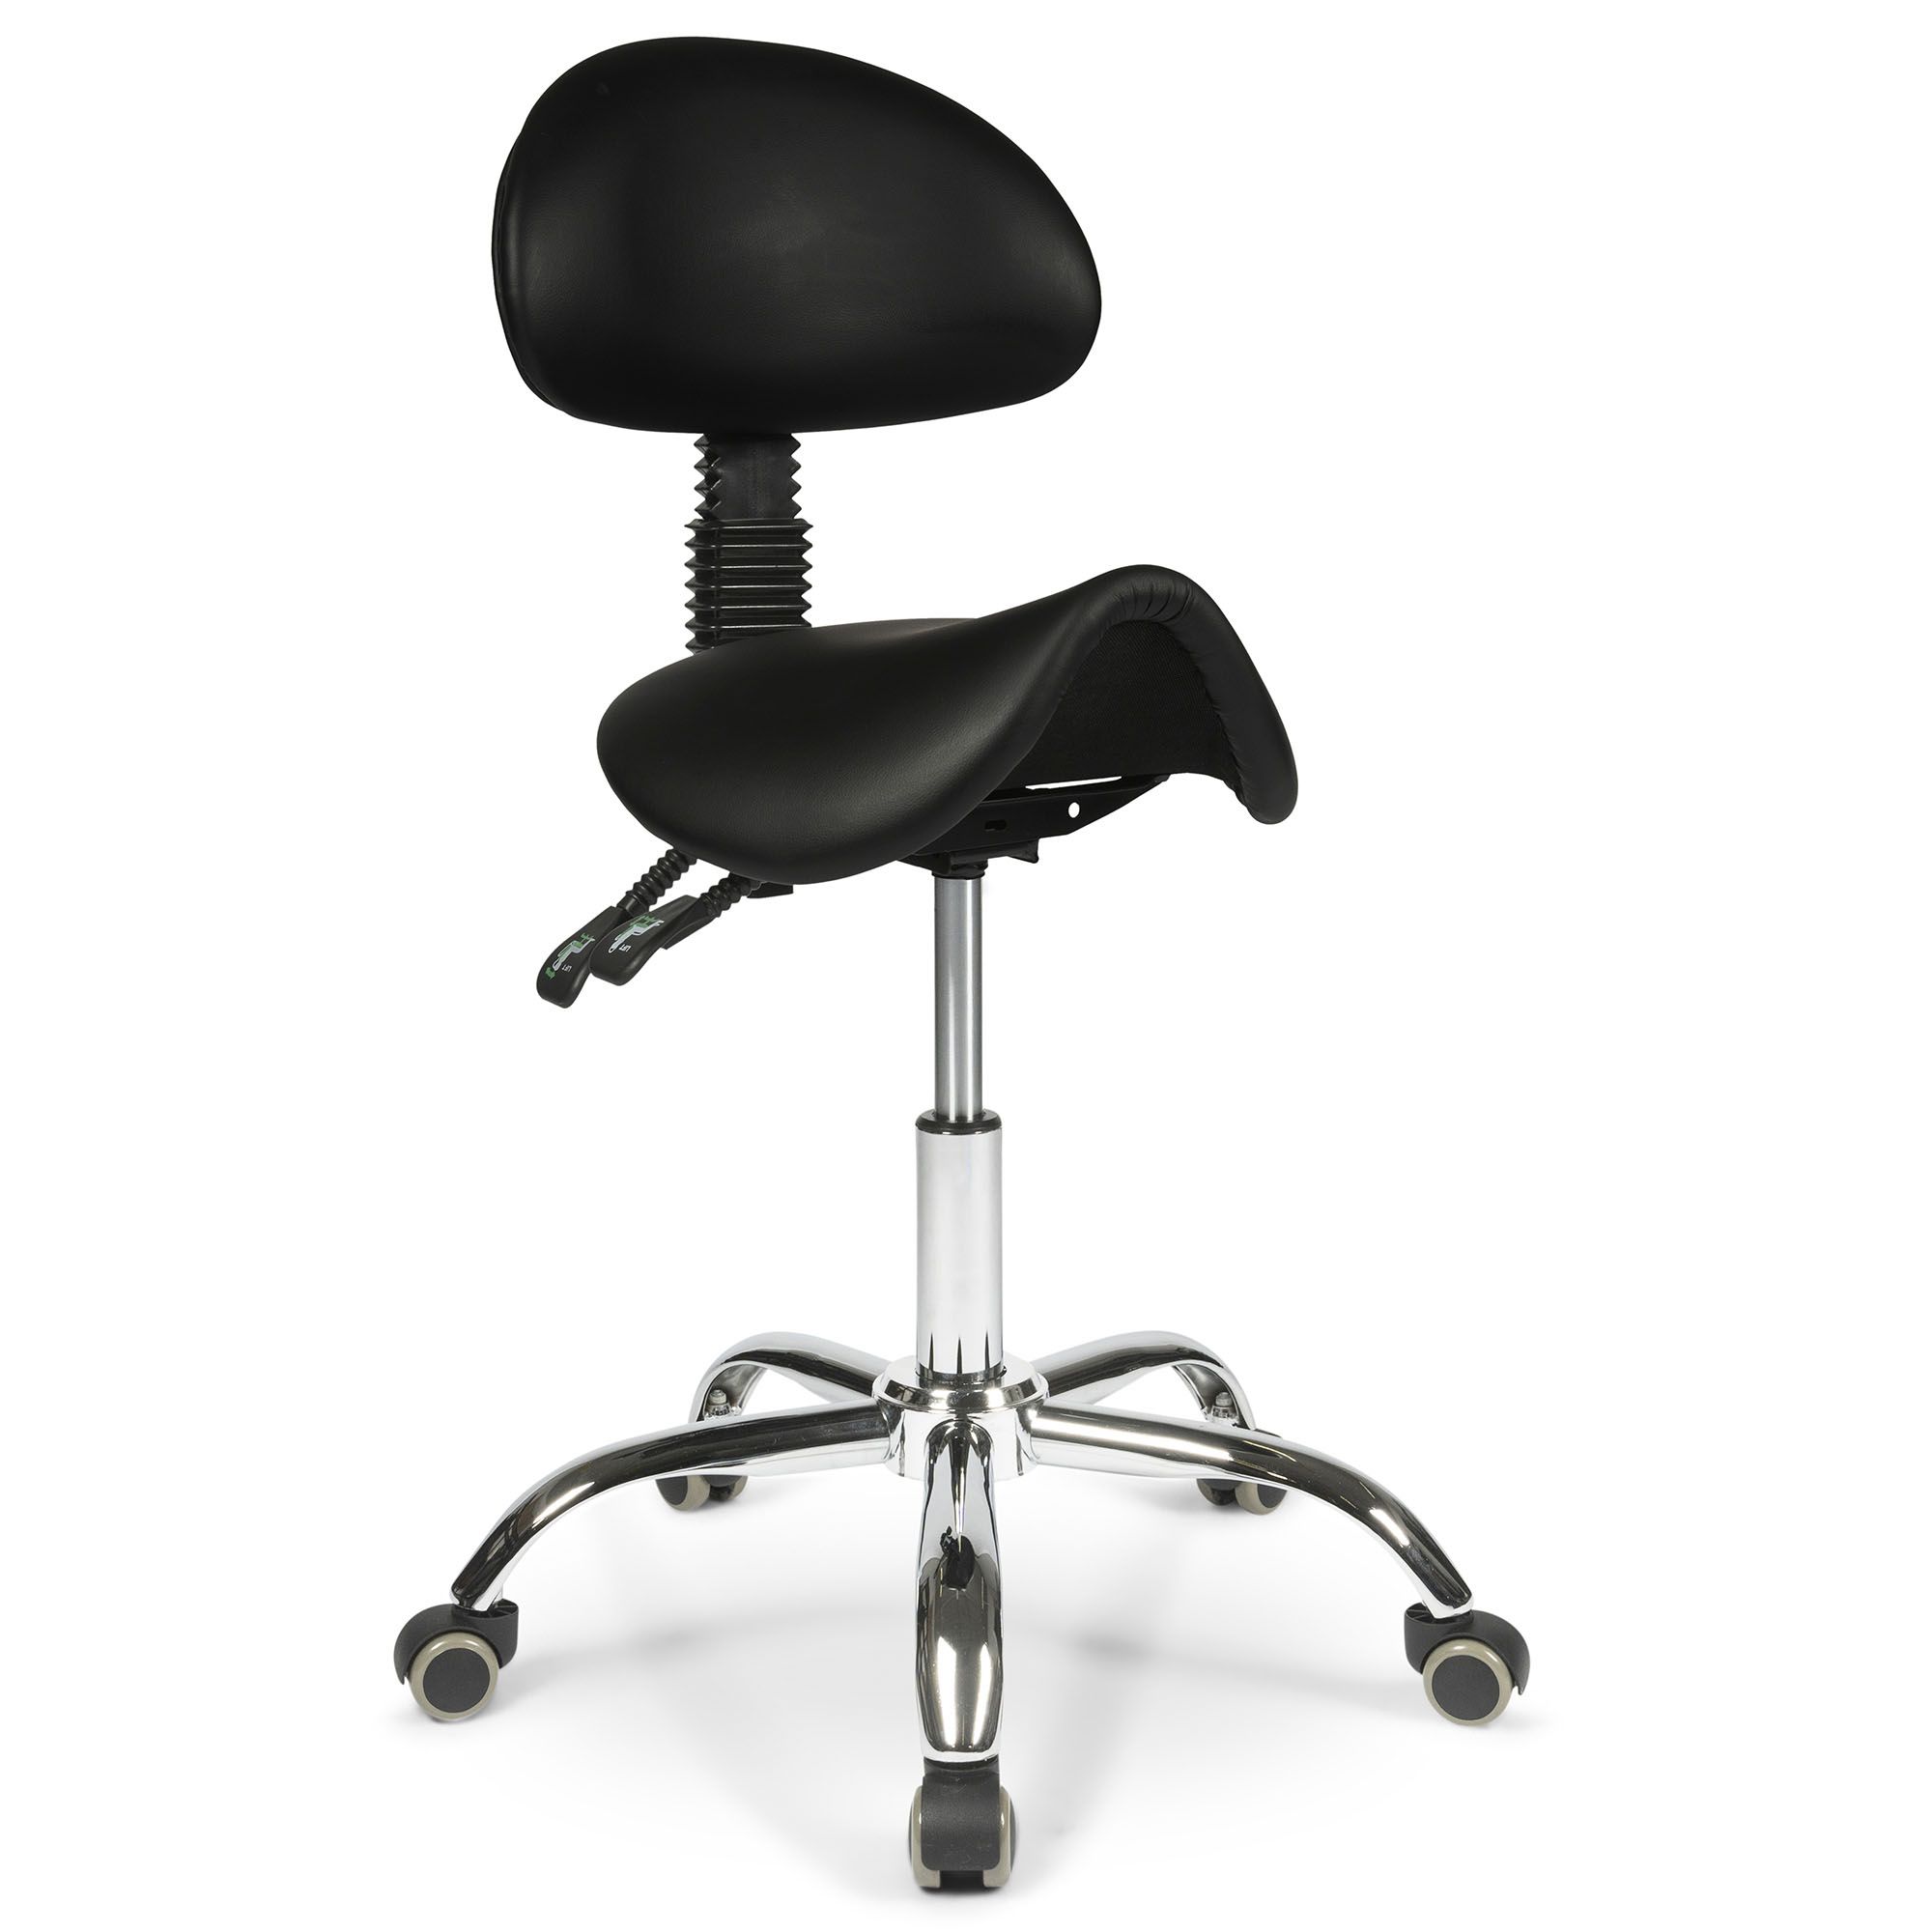 adjustment wheel of the dunimed ergonomic saddle stool with backrest